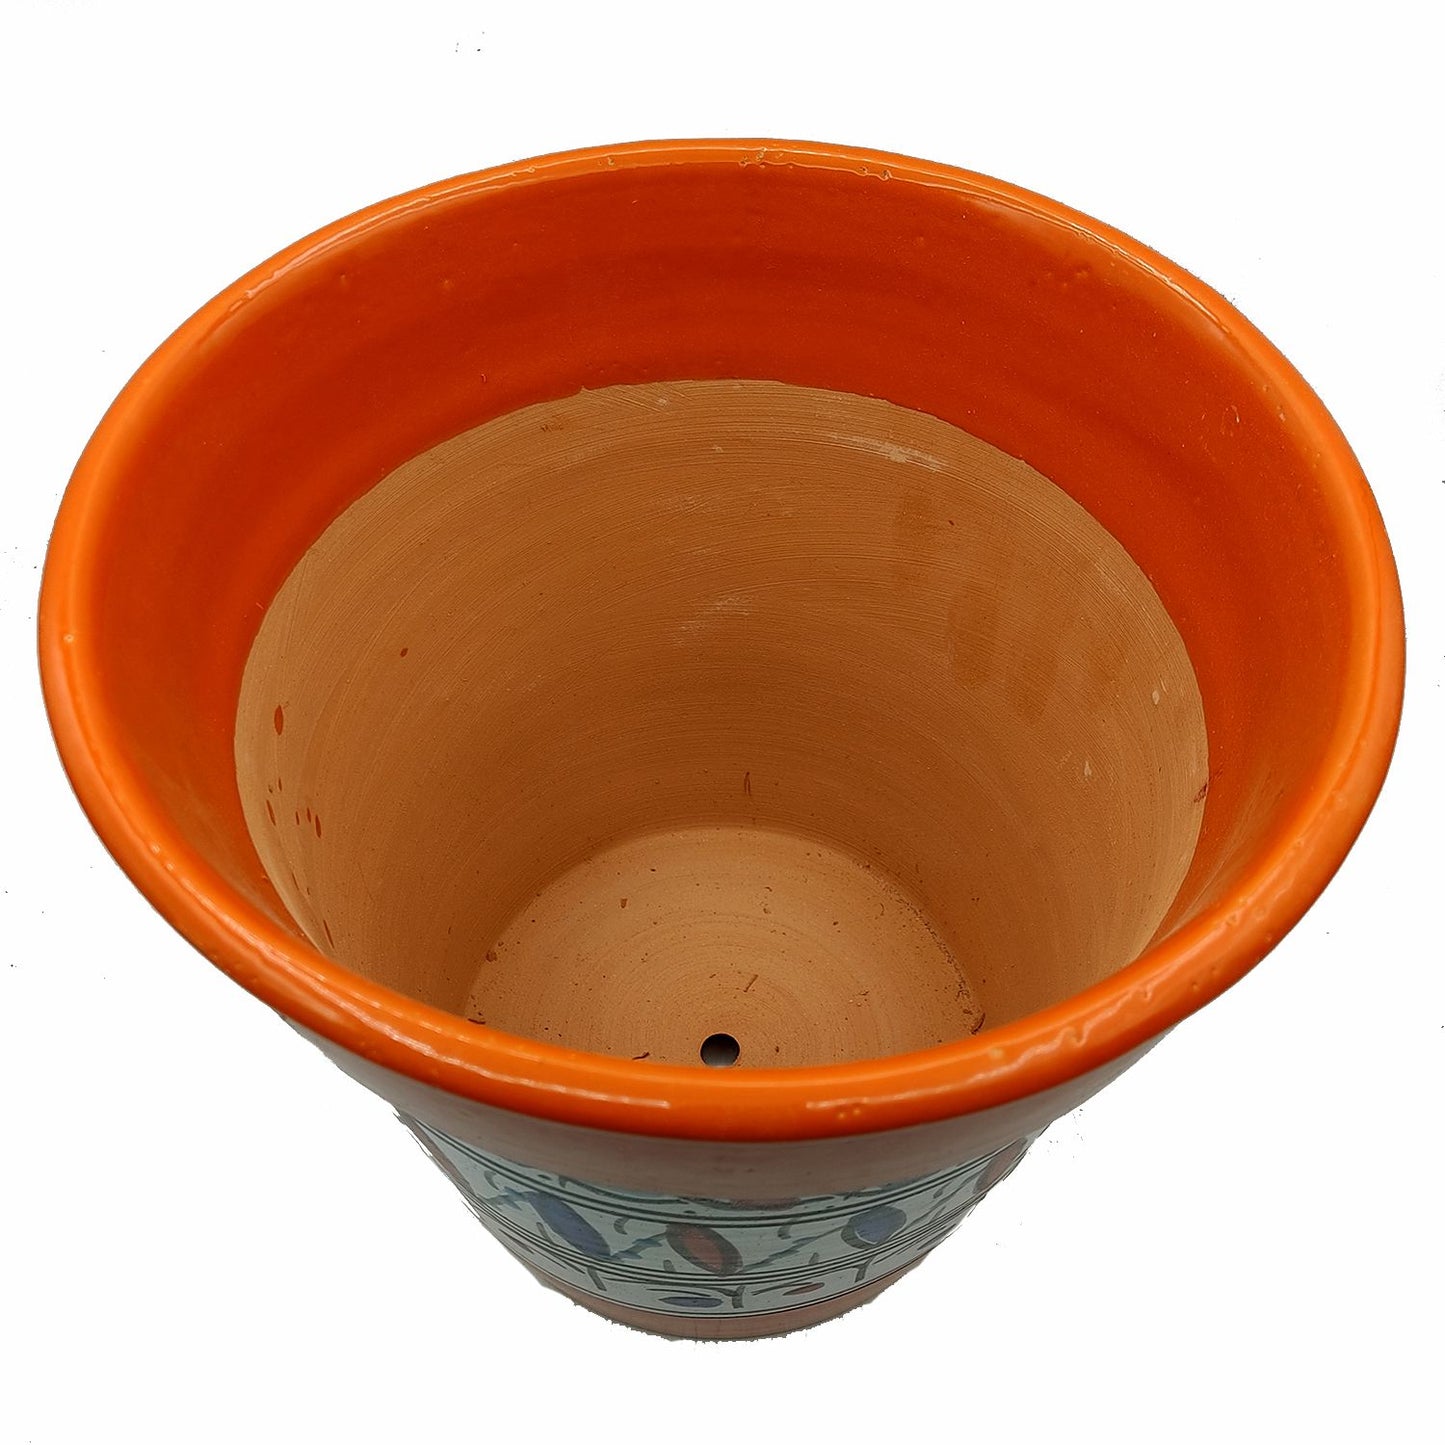 Vaso Terracotta Tunisino Marocchino Etnico Decoro Fioriera Ceramica 0411221019